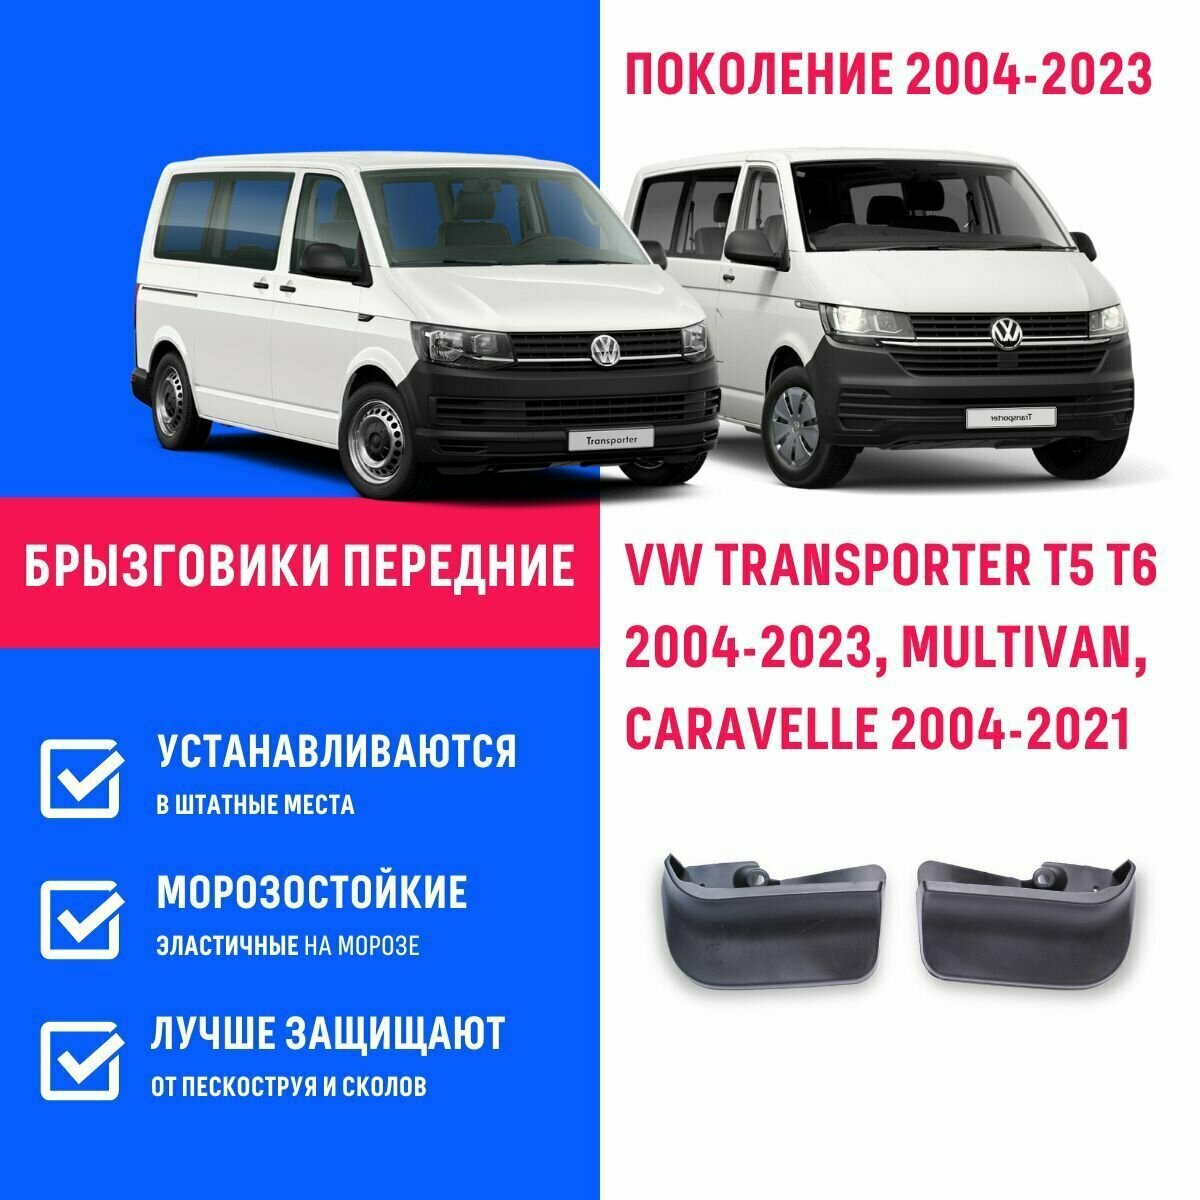 Брызговики передние VW TRANSPORTER T5 T6 2004-2023 MULTIVAN CARAVELLE поколение 2004-2021